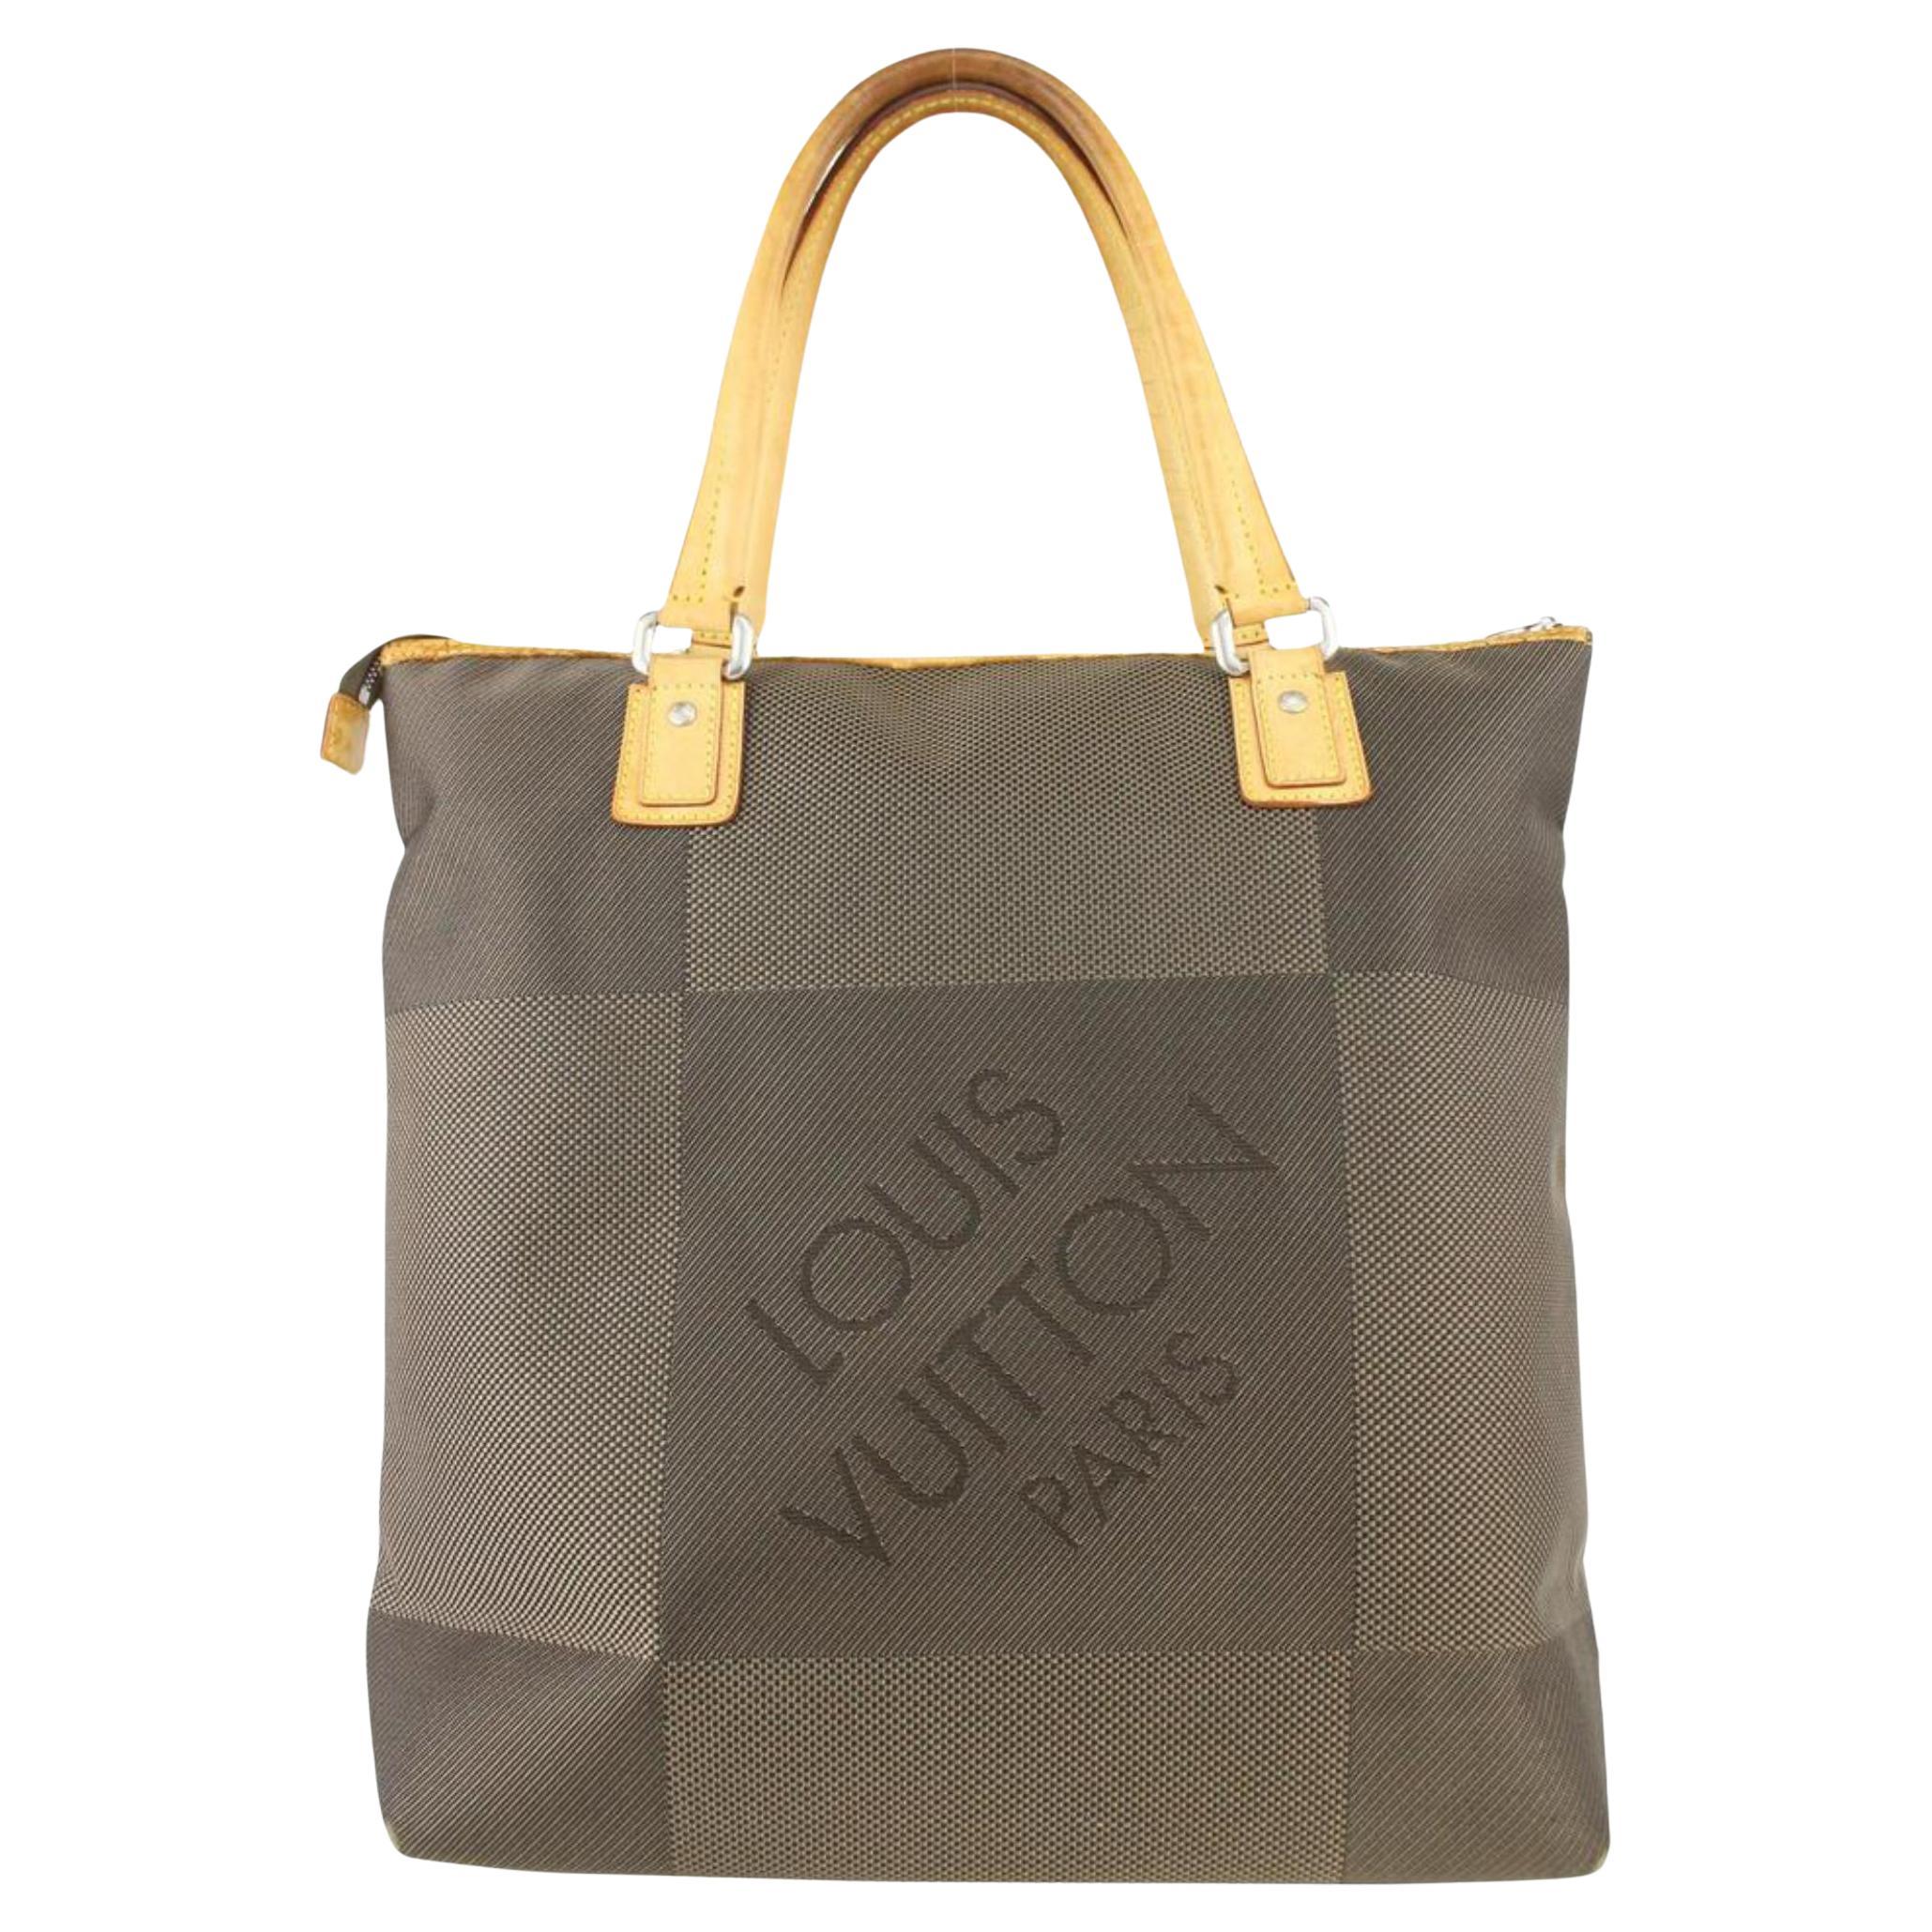 Louis Vuitton Damier Geant Cougar Tote bag 1028lv16 For Sale